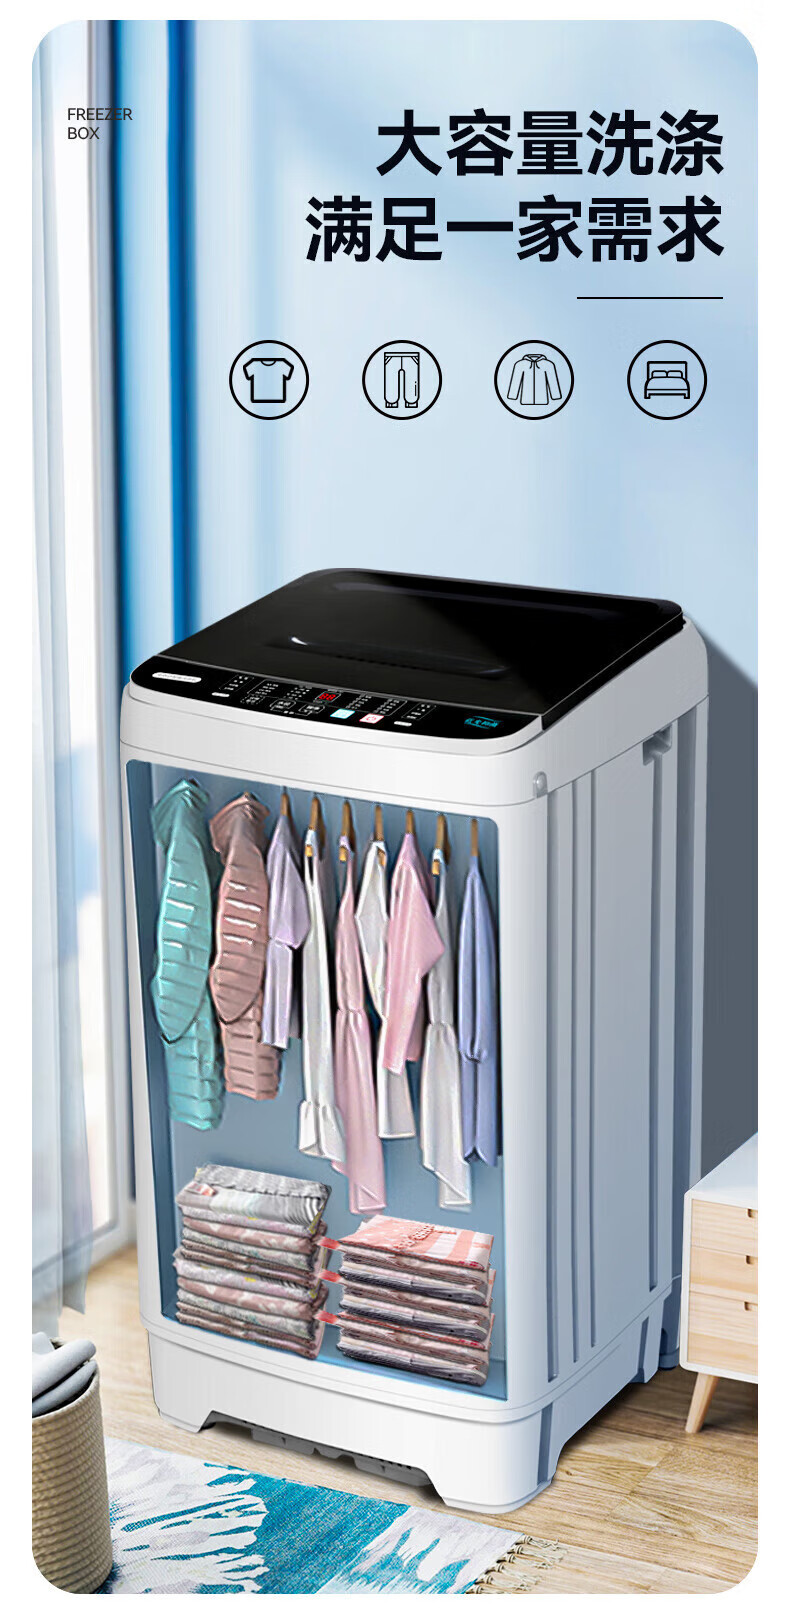 志高XQB65-818A洗衣机图片